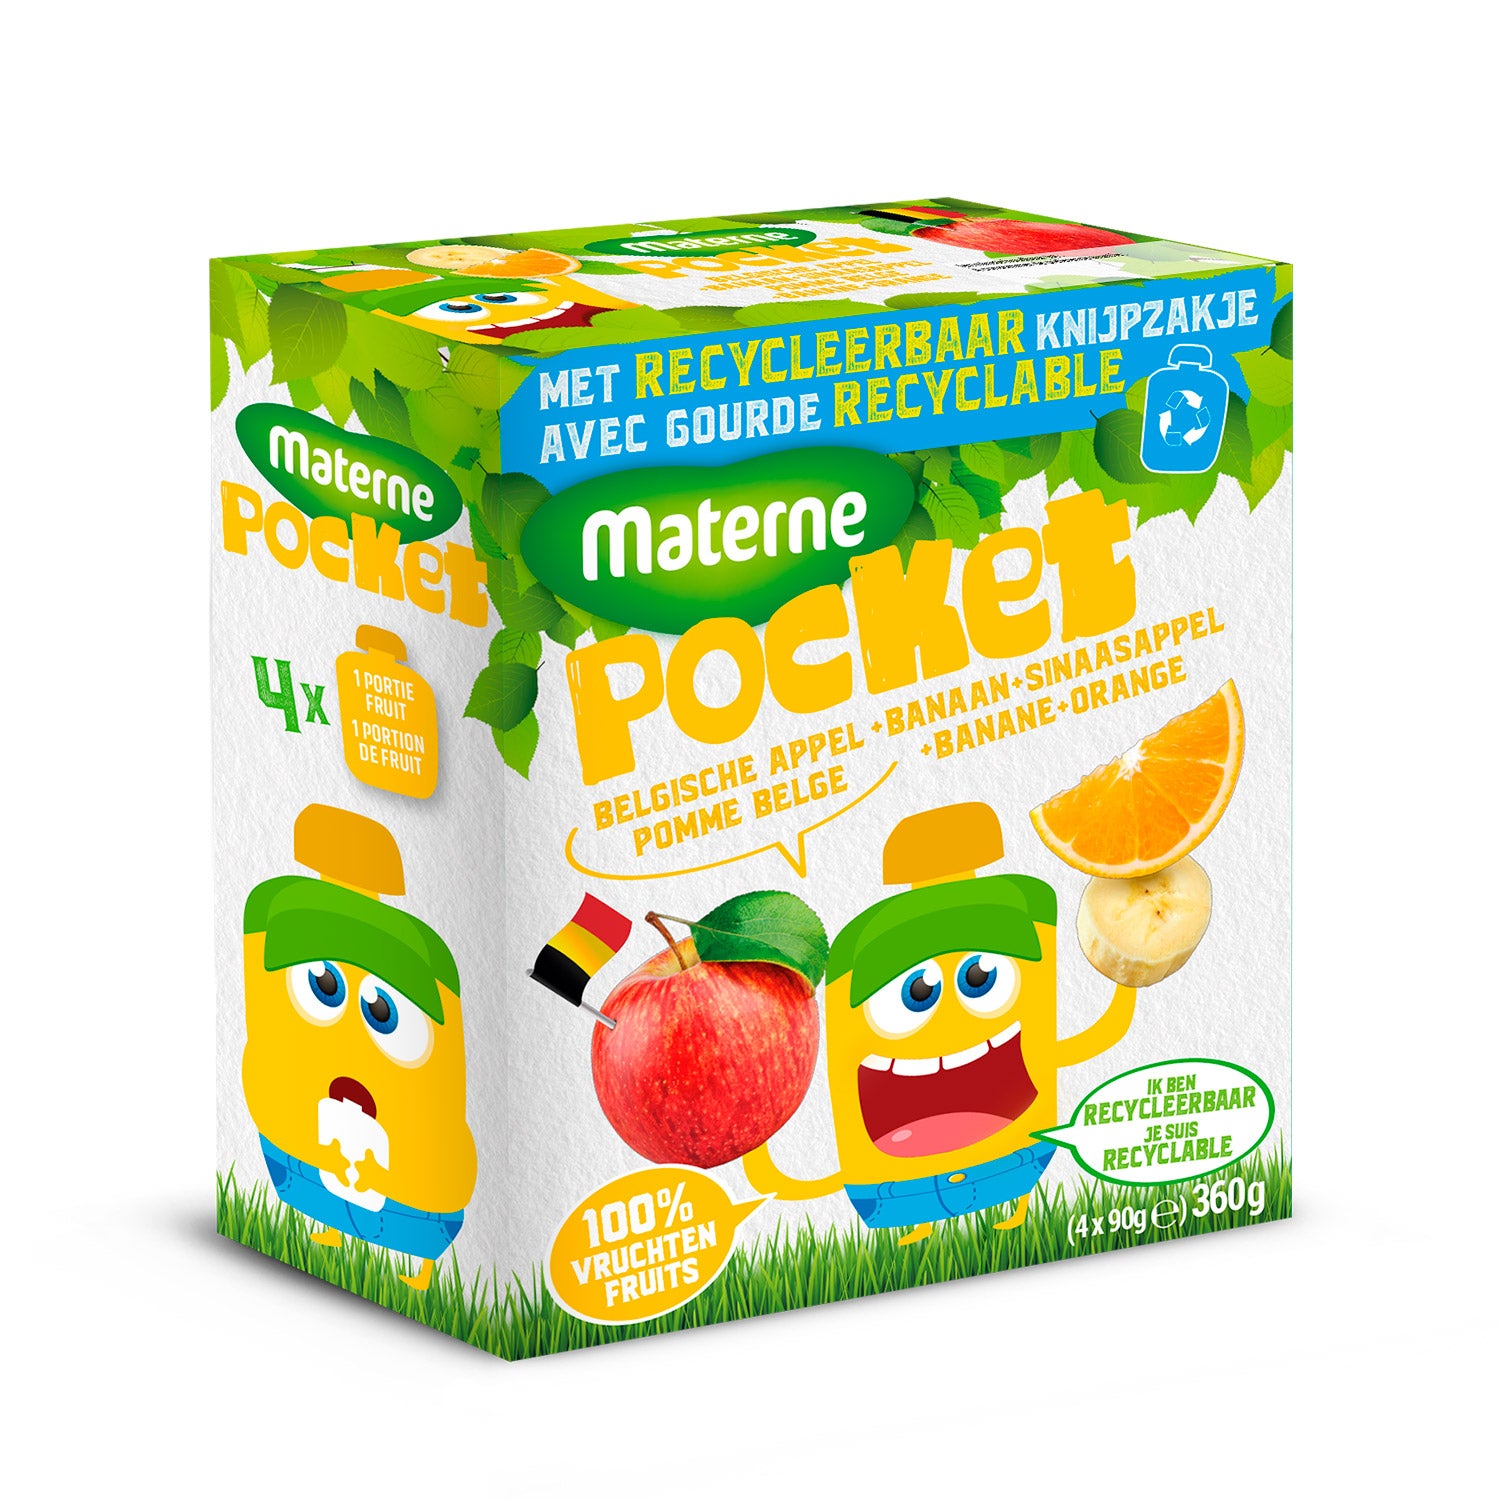 Materne Pocket<br>Belgische appel - Banaan - Sinaasappel